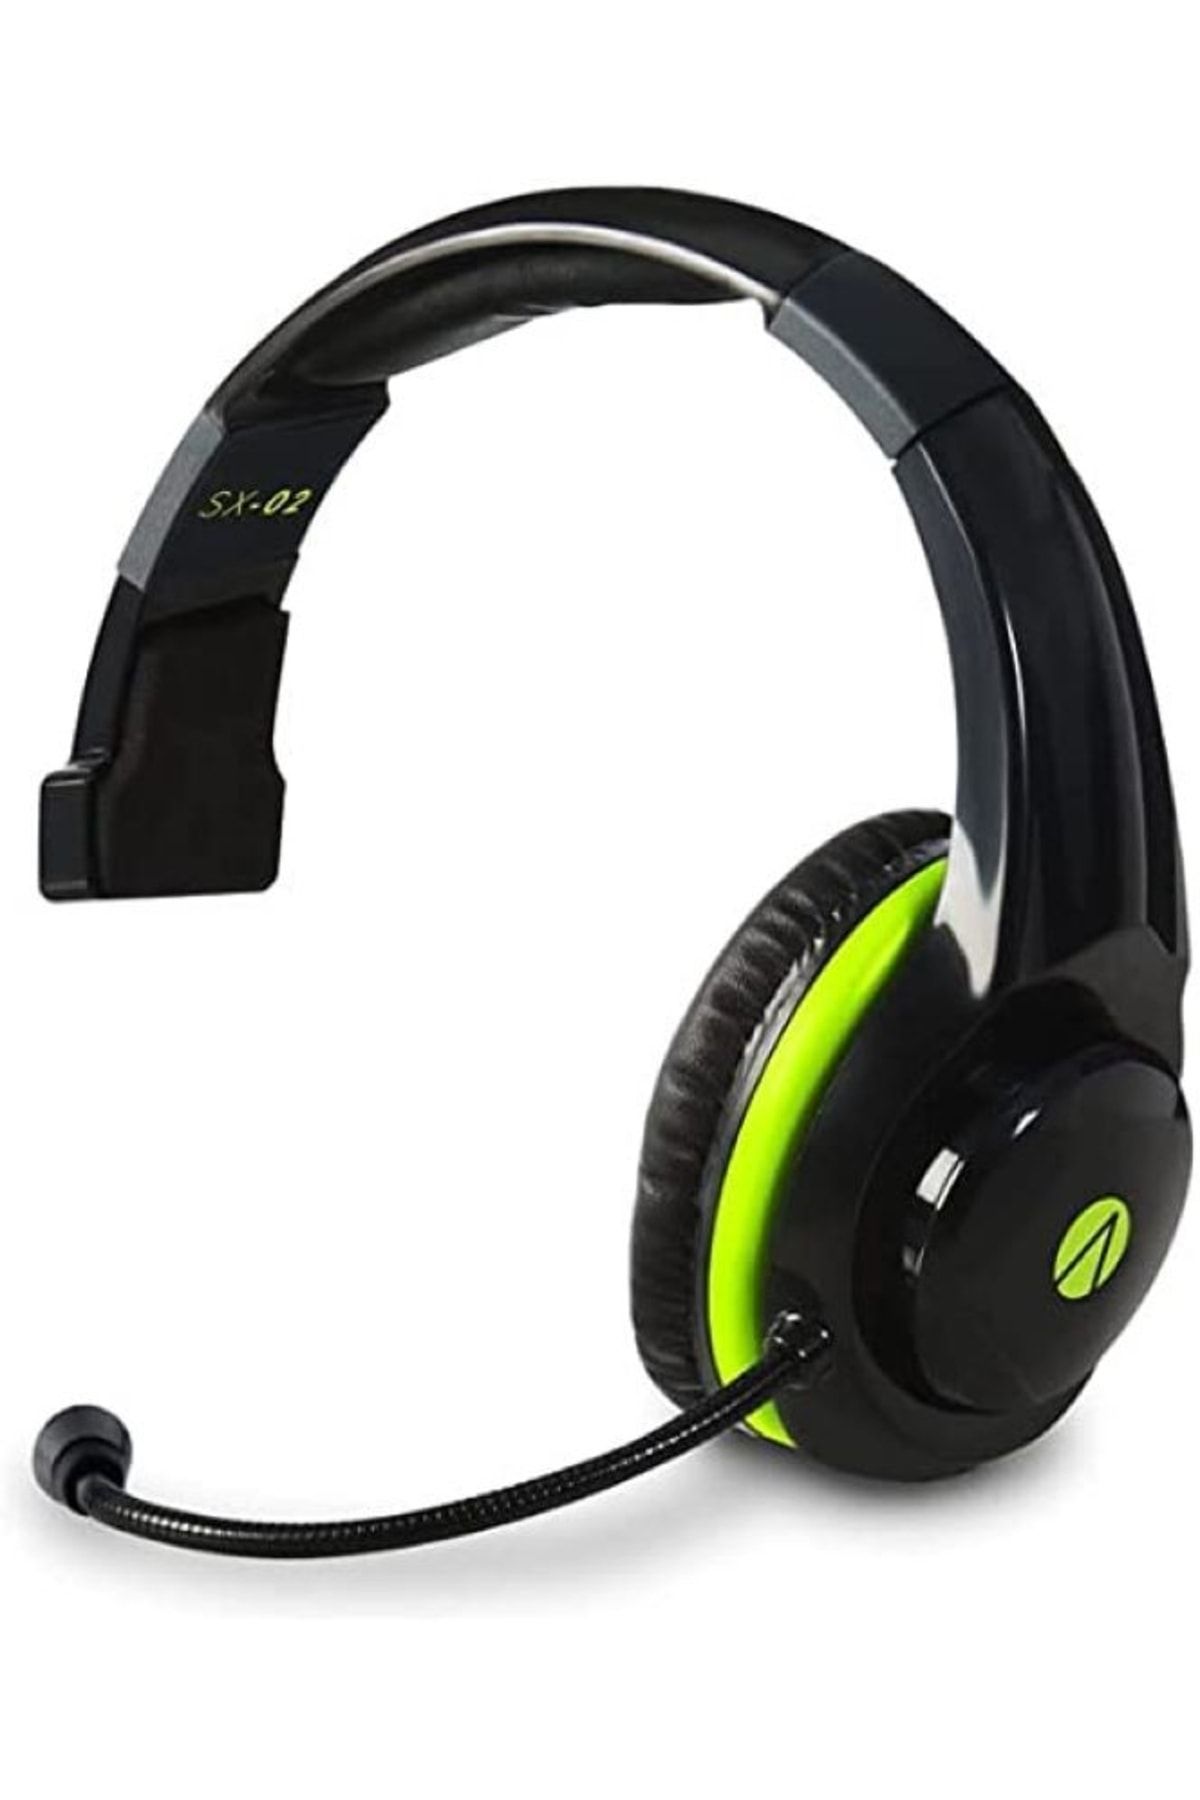 Hat Fiyatı, Kafa Oyuncu Stealth Sx02 Trendyol Gaming Bandı Çift Kulaklığı Ayarlanabilir Ses Içi - Kontrol Headset Yorumları Coverzone Mono